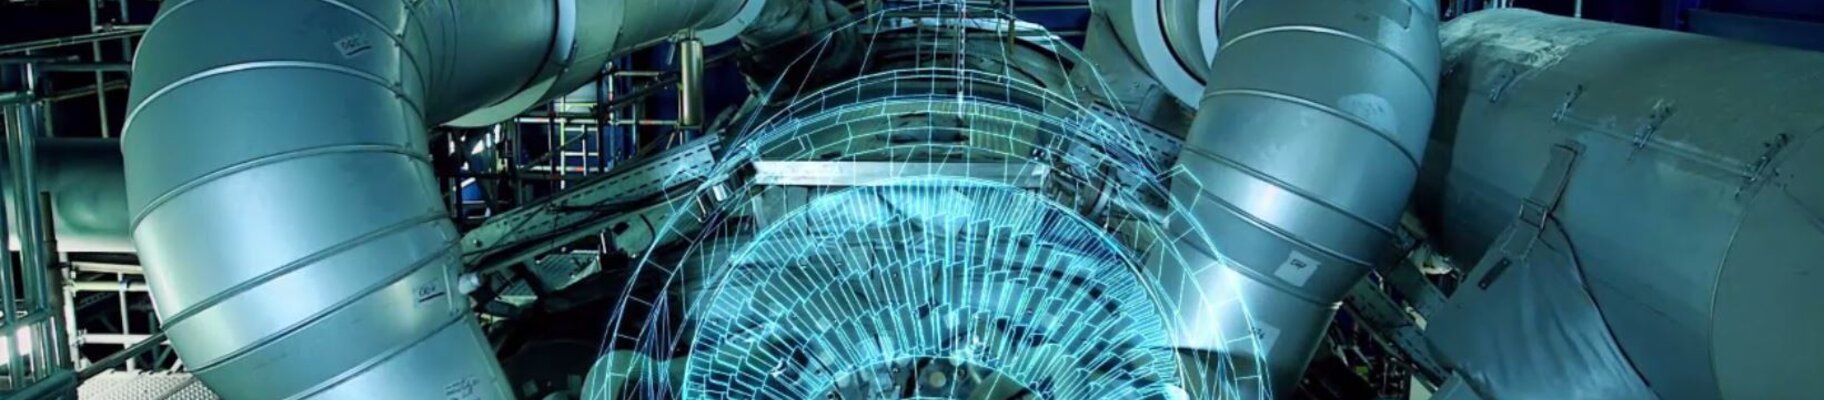 3D-Druck von Siemens-Gasturbinen für die Stromerzeugung